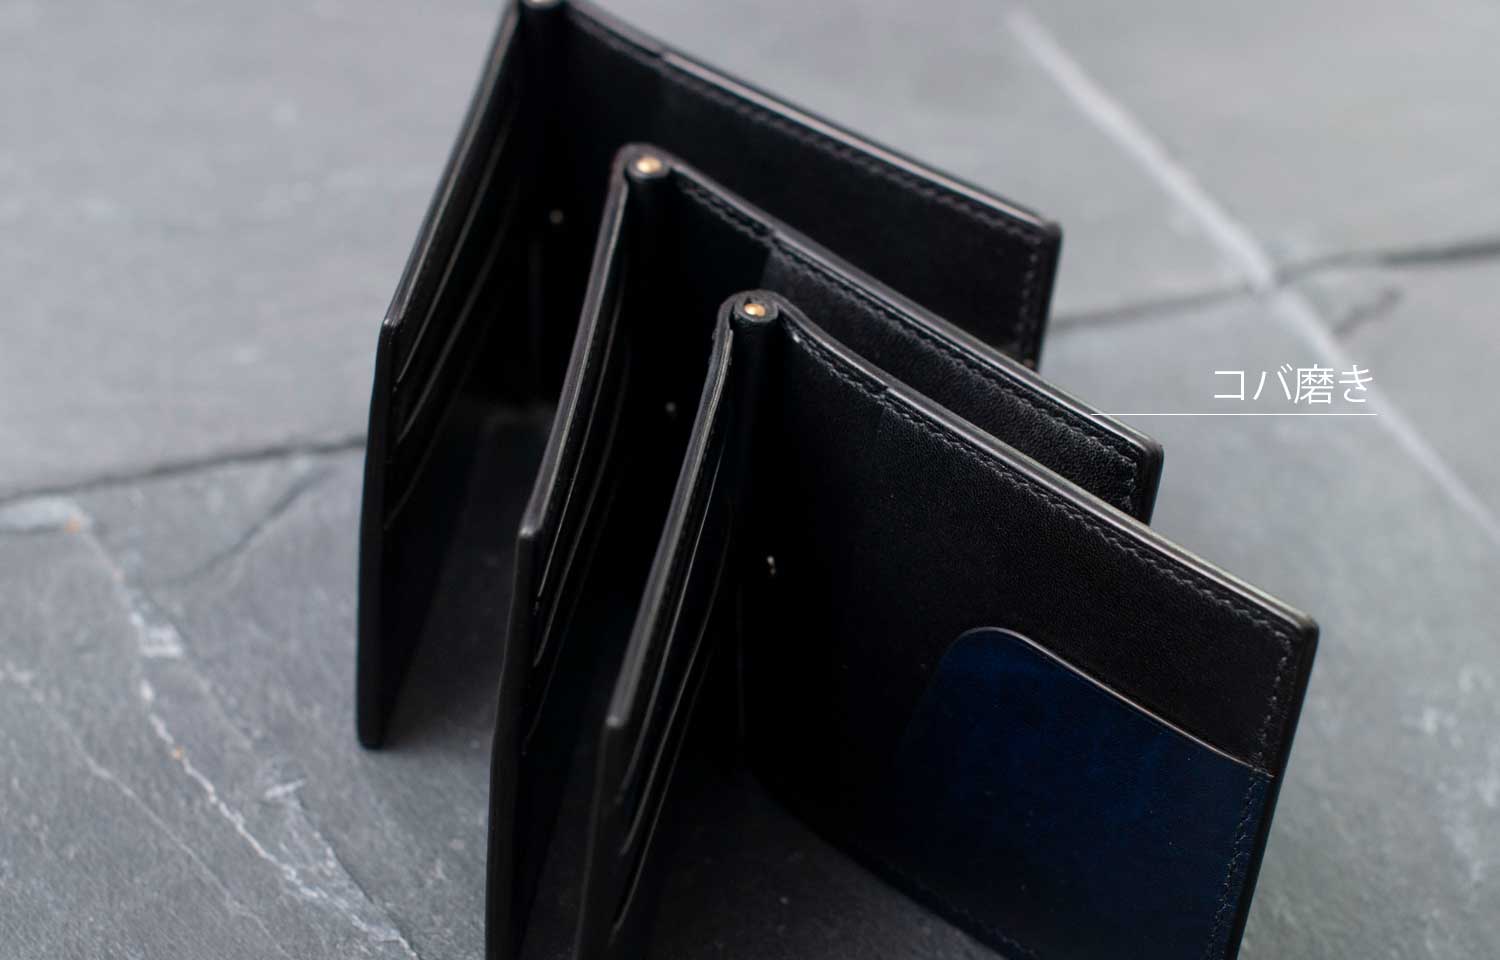 レビュー】30代メンズにおすすめしたい上質なマネークリップ財布とは 